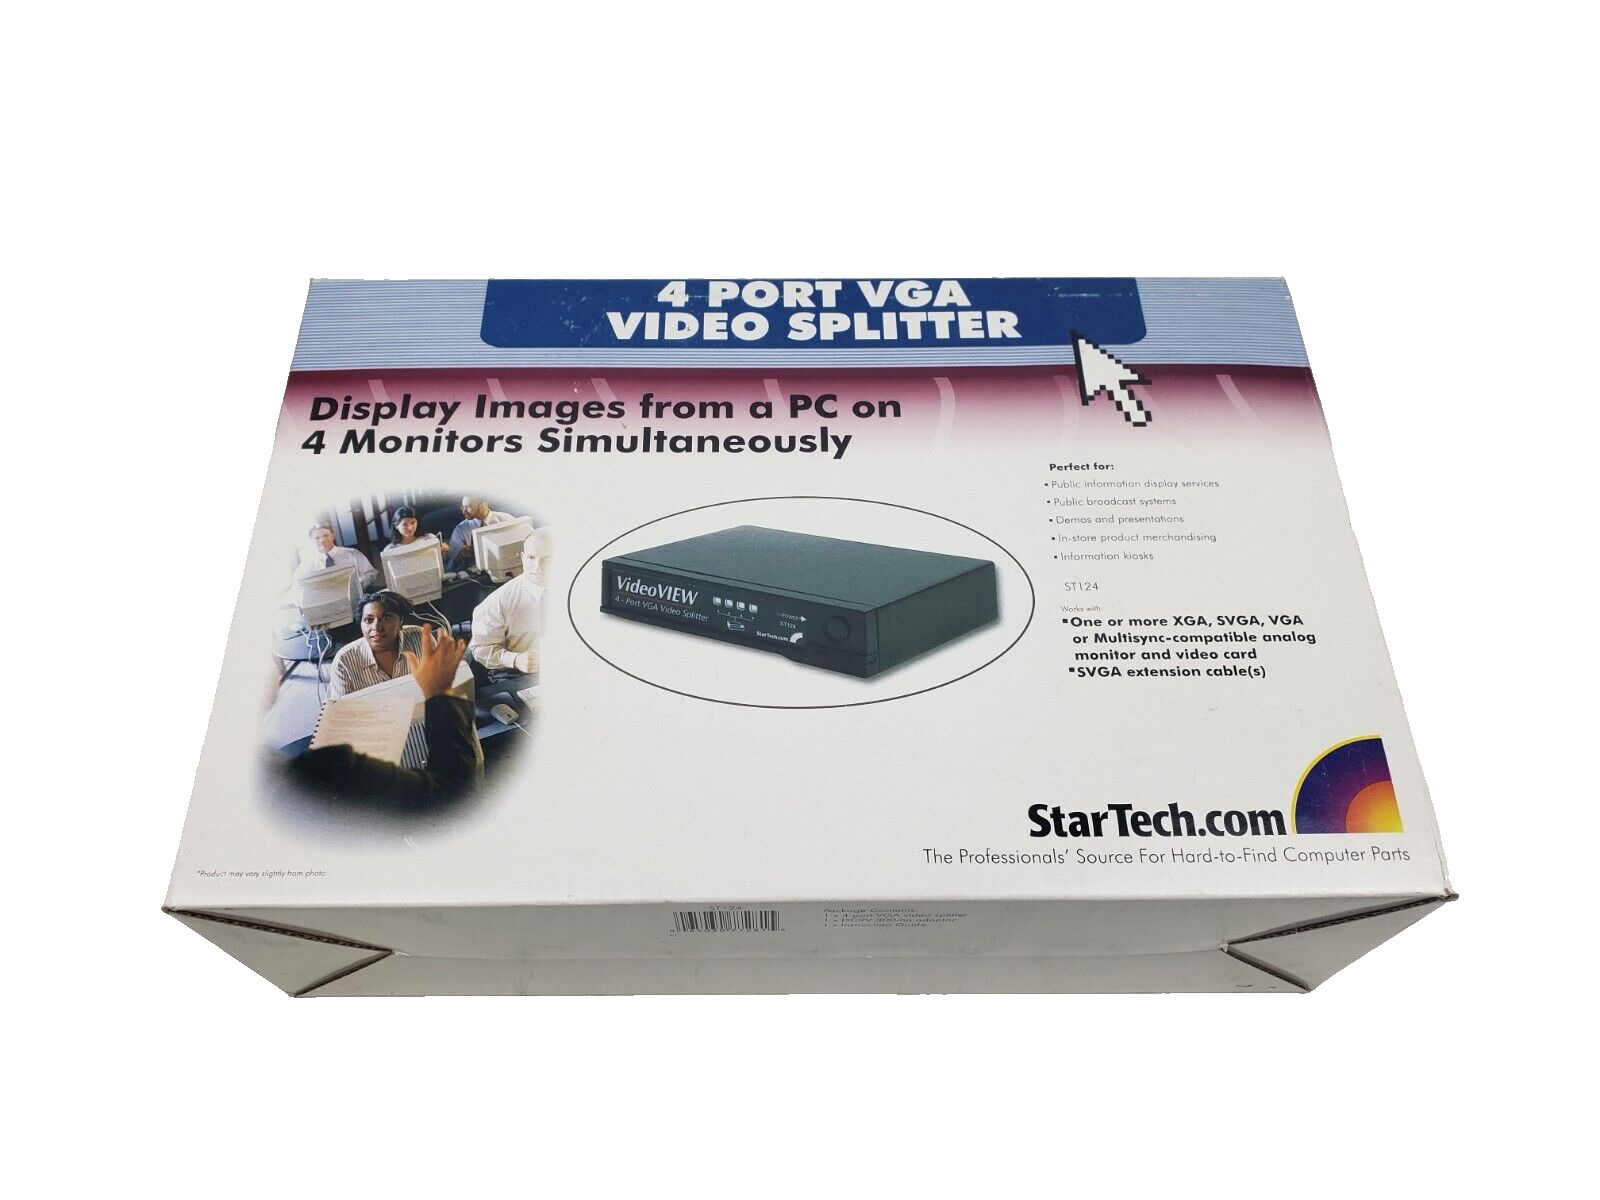 Startech.com ST124 4 Port VGA Video Splitter New Open Box w/ Adapter